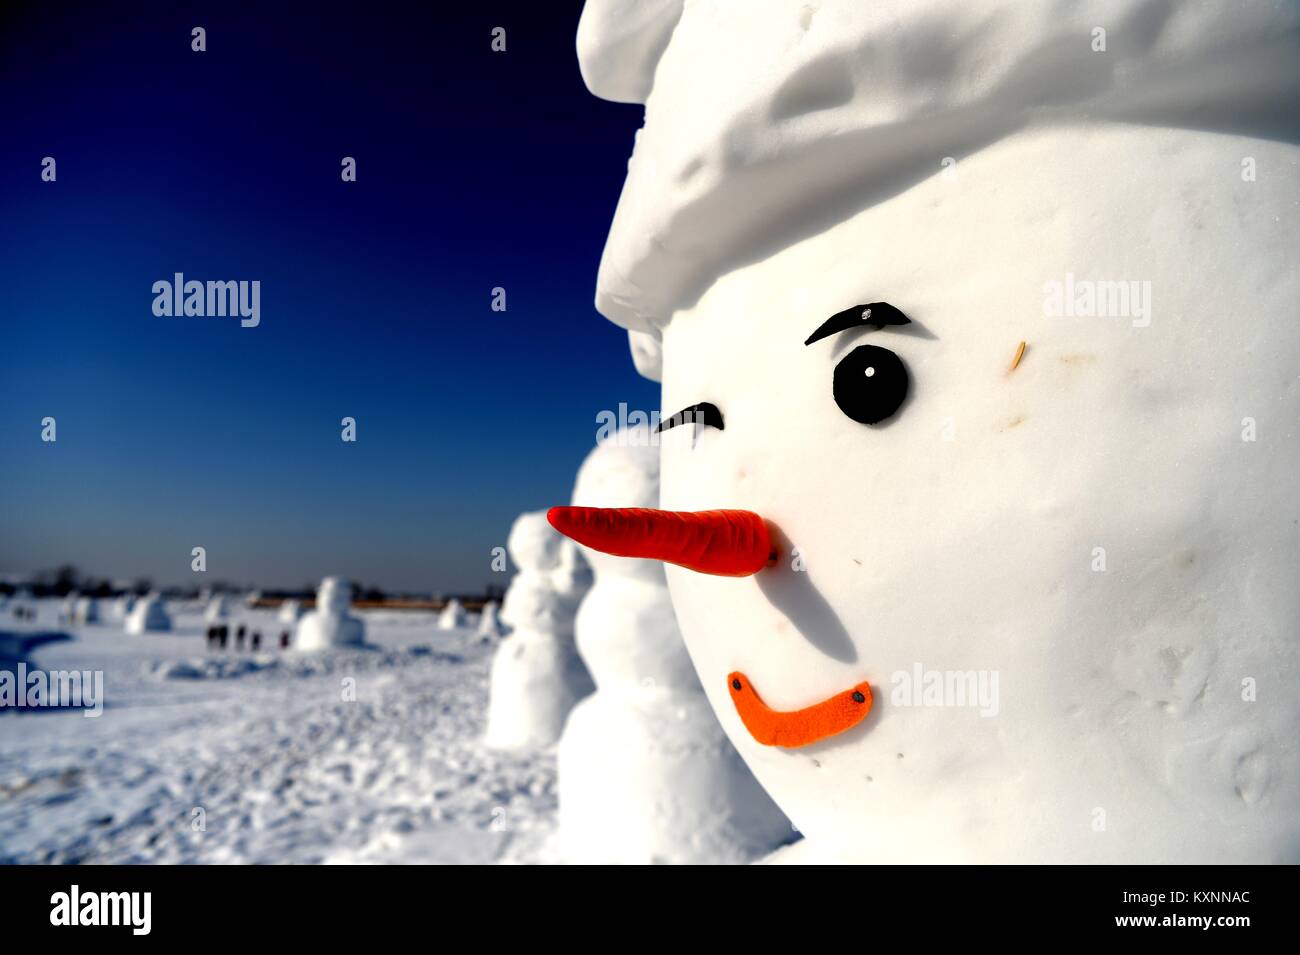 Harbin, Heilongjiang Provinz Chinas. 11 Jan, 2018. Schneemann Skulpturen sind bei einem Eis und Schnee Park in Harbin, der Hauptstadt der Provinz Heilongjiang im Nordosten Chinas, Jan. 11, 2018 gesehen. Insgesamt 2.018 niedliche Schneemänner wurden hier im Jahr 2018 zu begrüßen. Credit: Wang Kai/Xinhua/Alamy leben Nachrichten Stockfoto